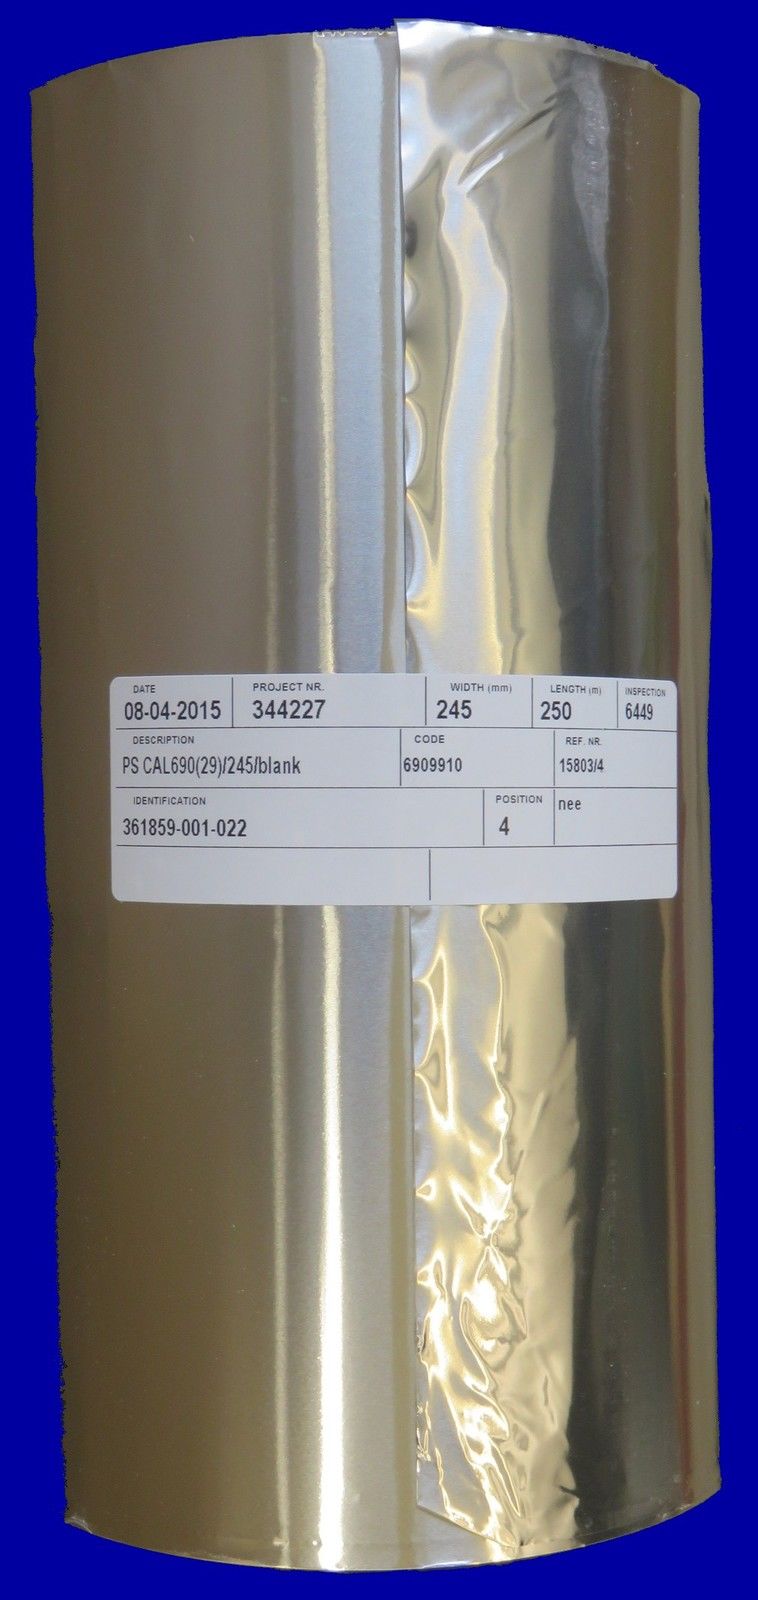 ALU- Peel Siegelfolie für IP 245 mm / 250m